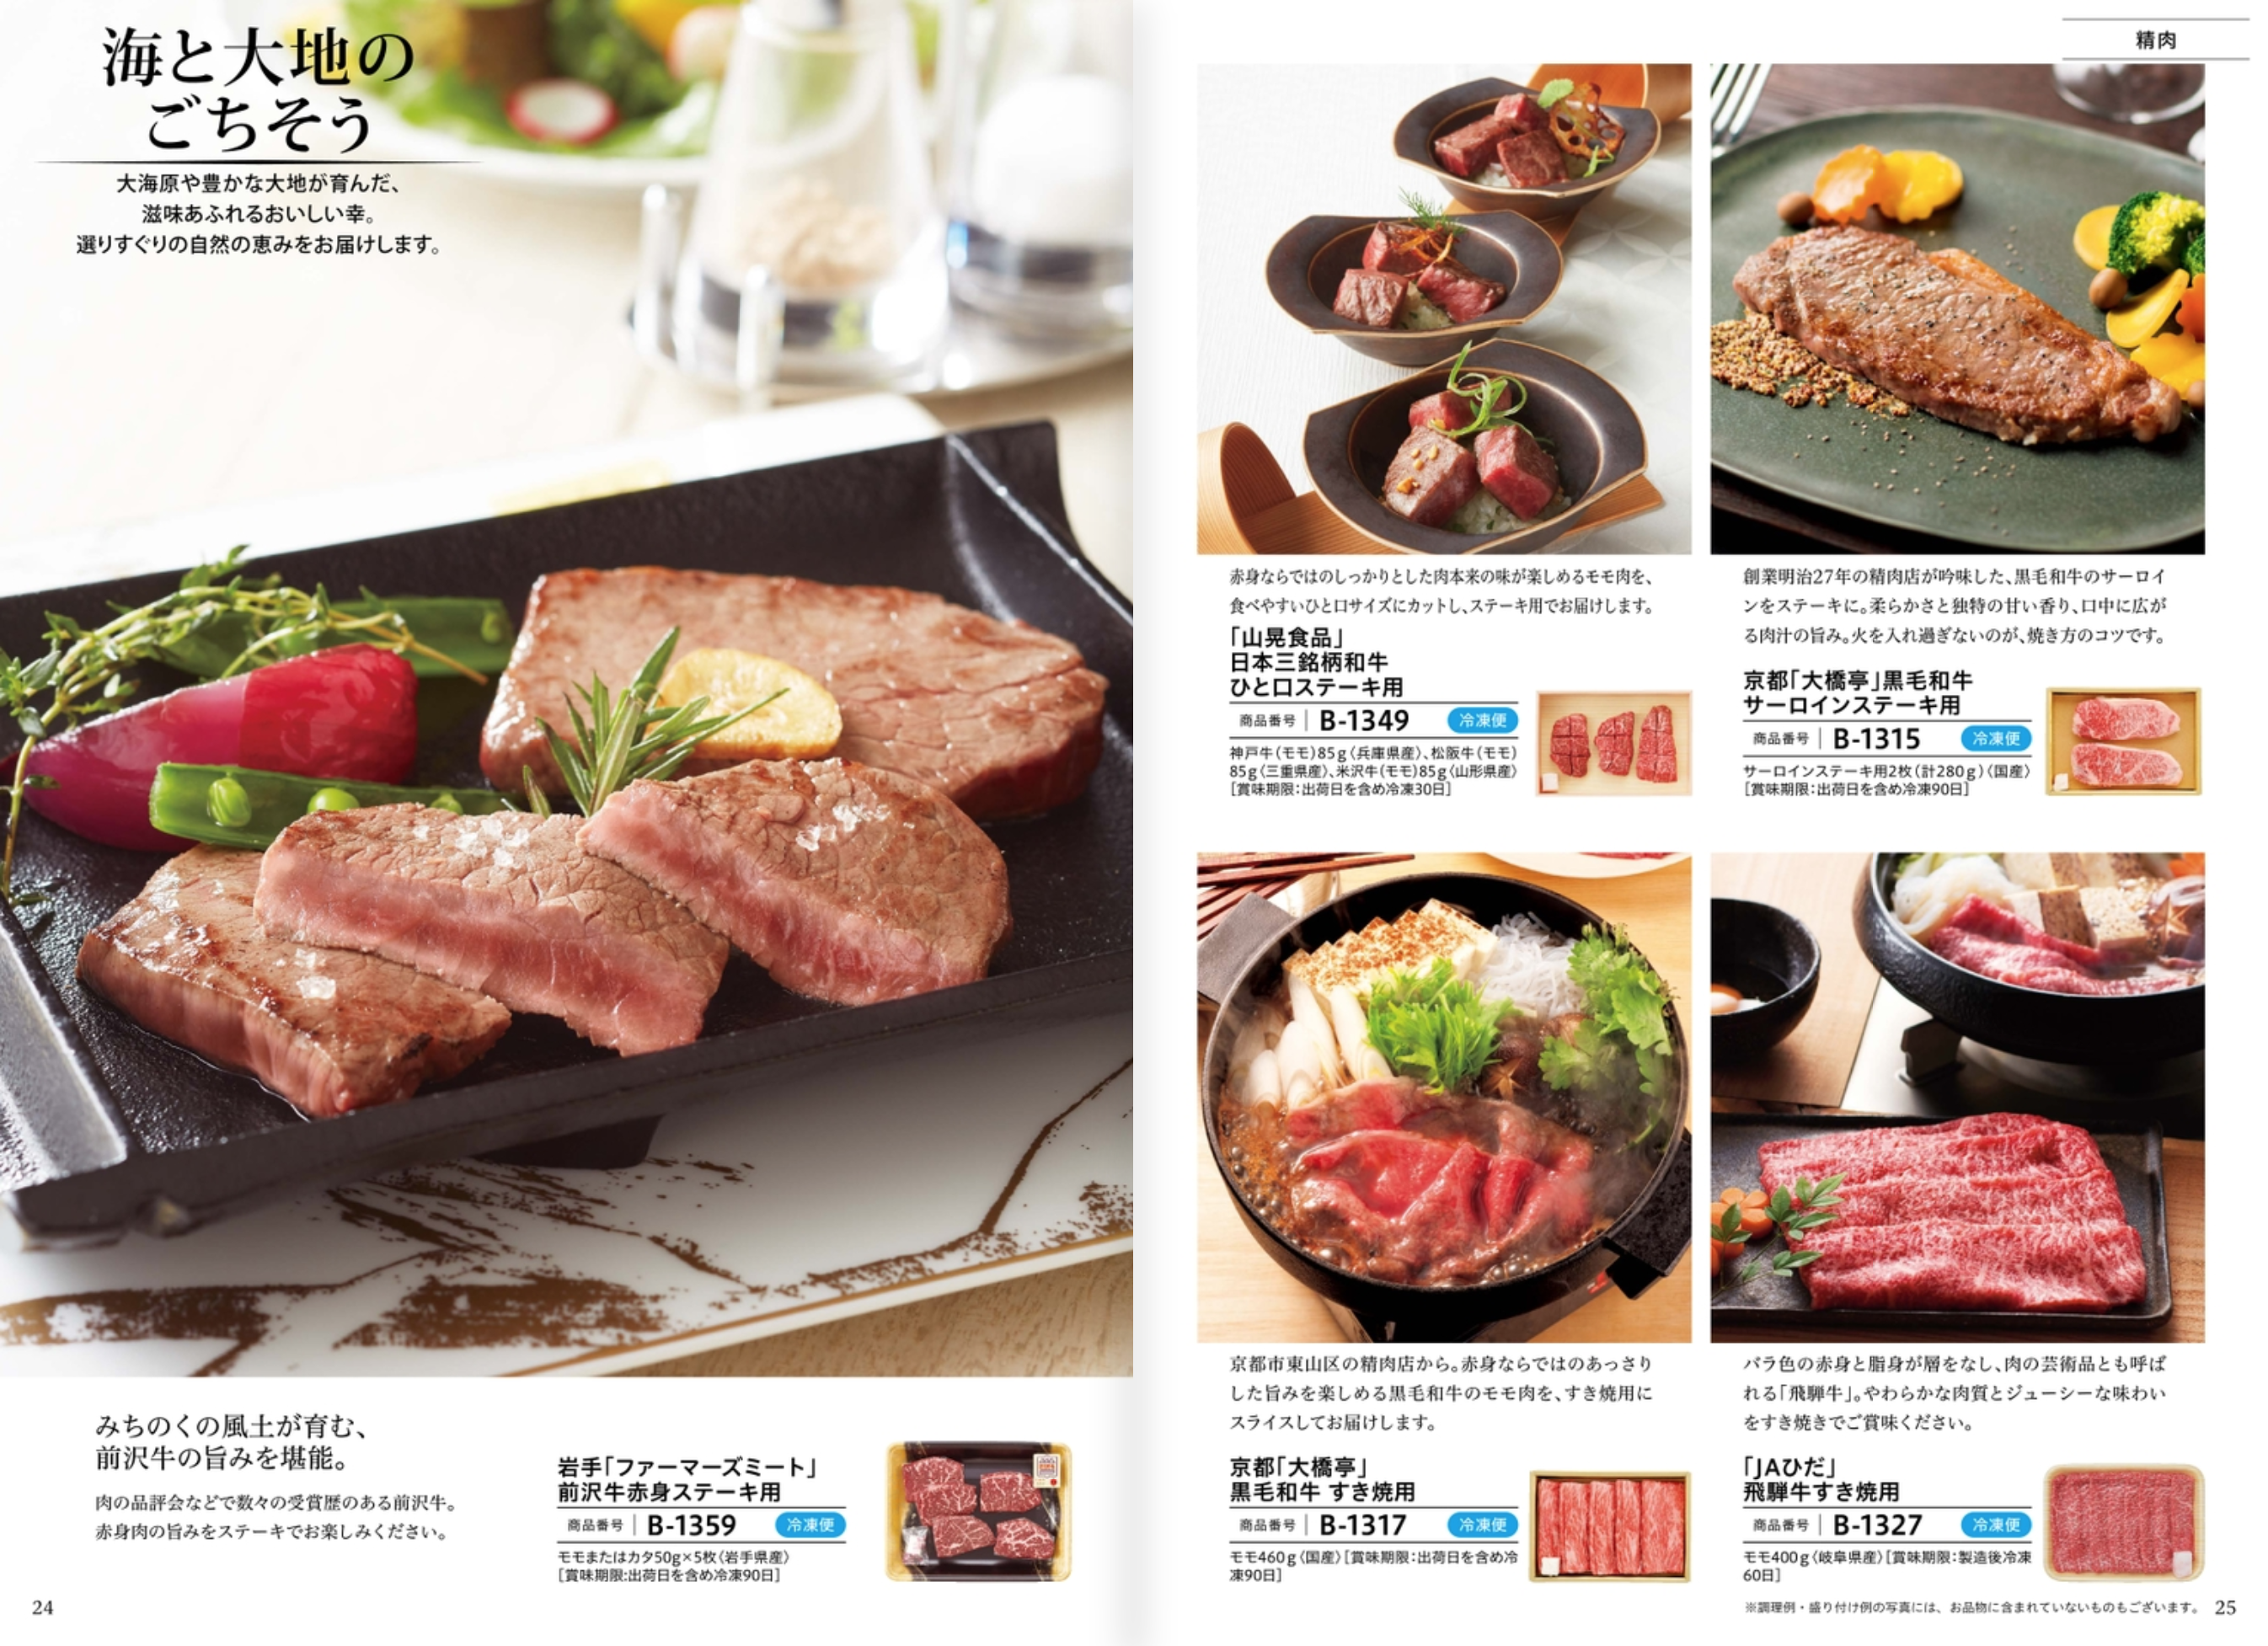 人気のカタログギフトごっつお便やFBコースなど、さまざまな肉の部位を紹介する雑誌のページ。